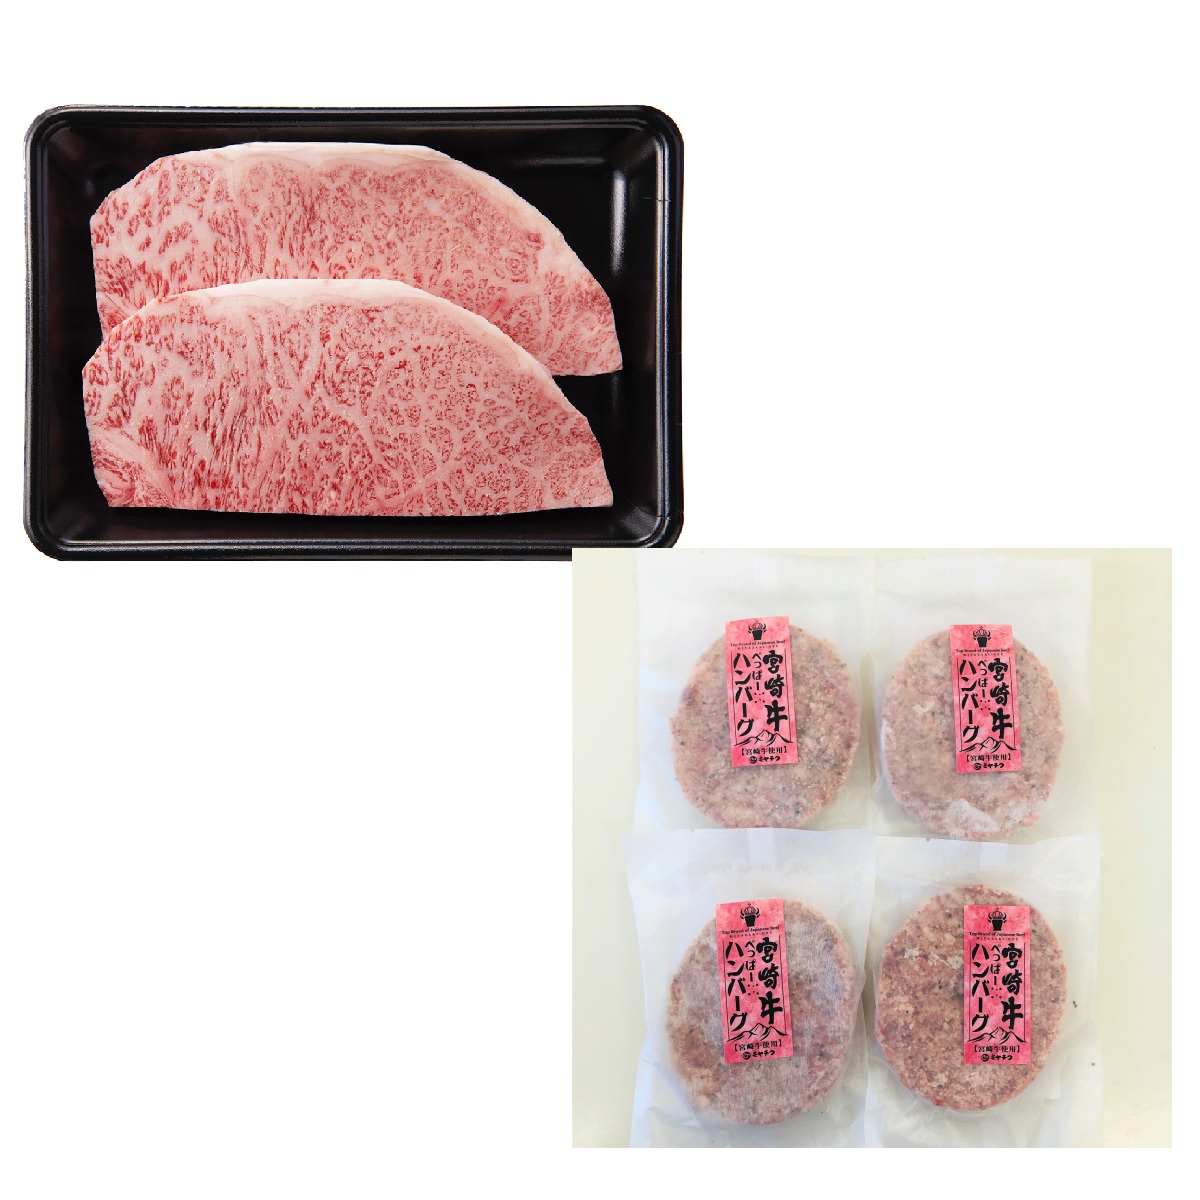 ステーキ 宮崎牛のギフト 通販 ミヤチク オンラインショップ